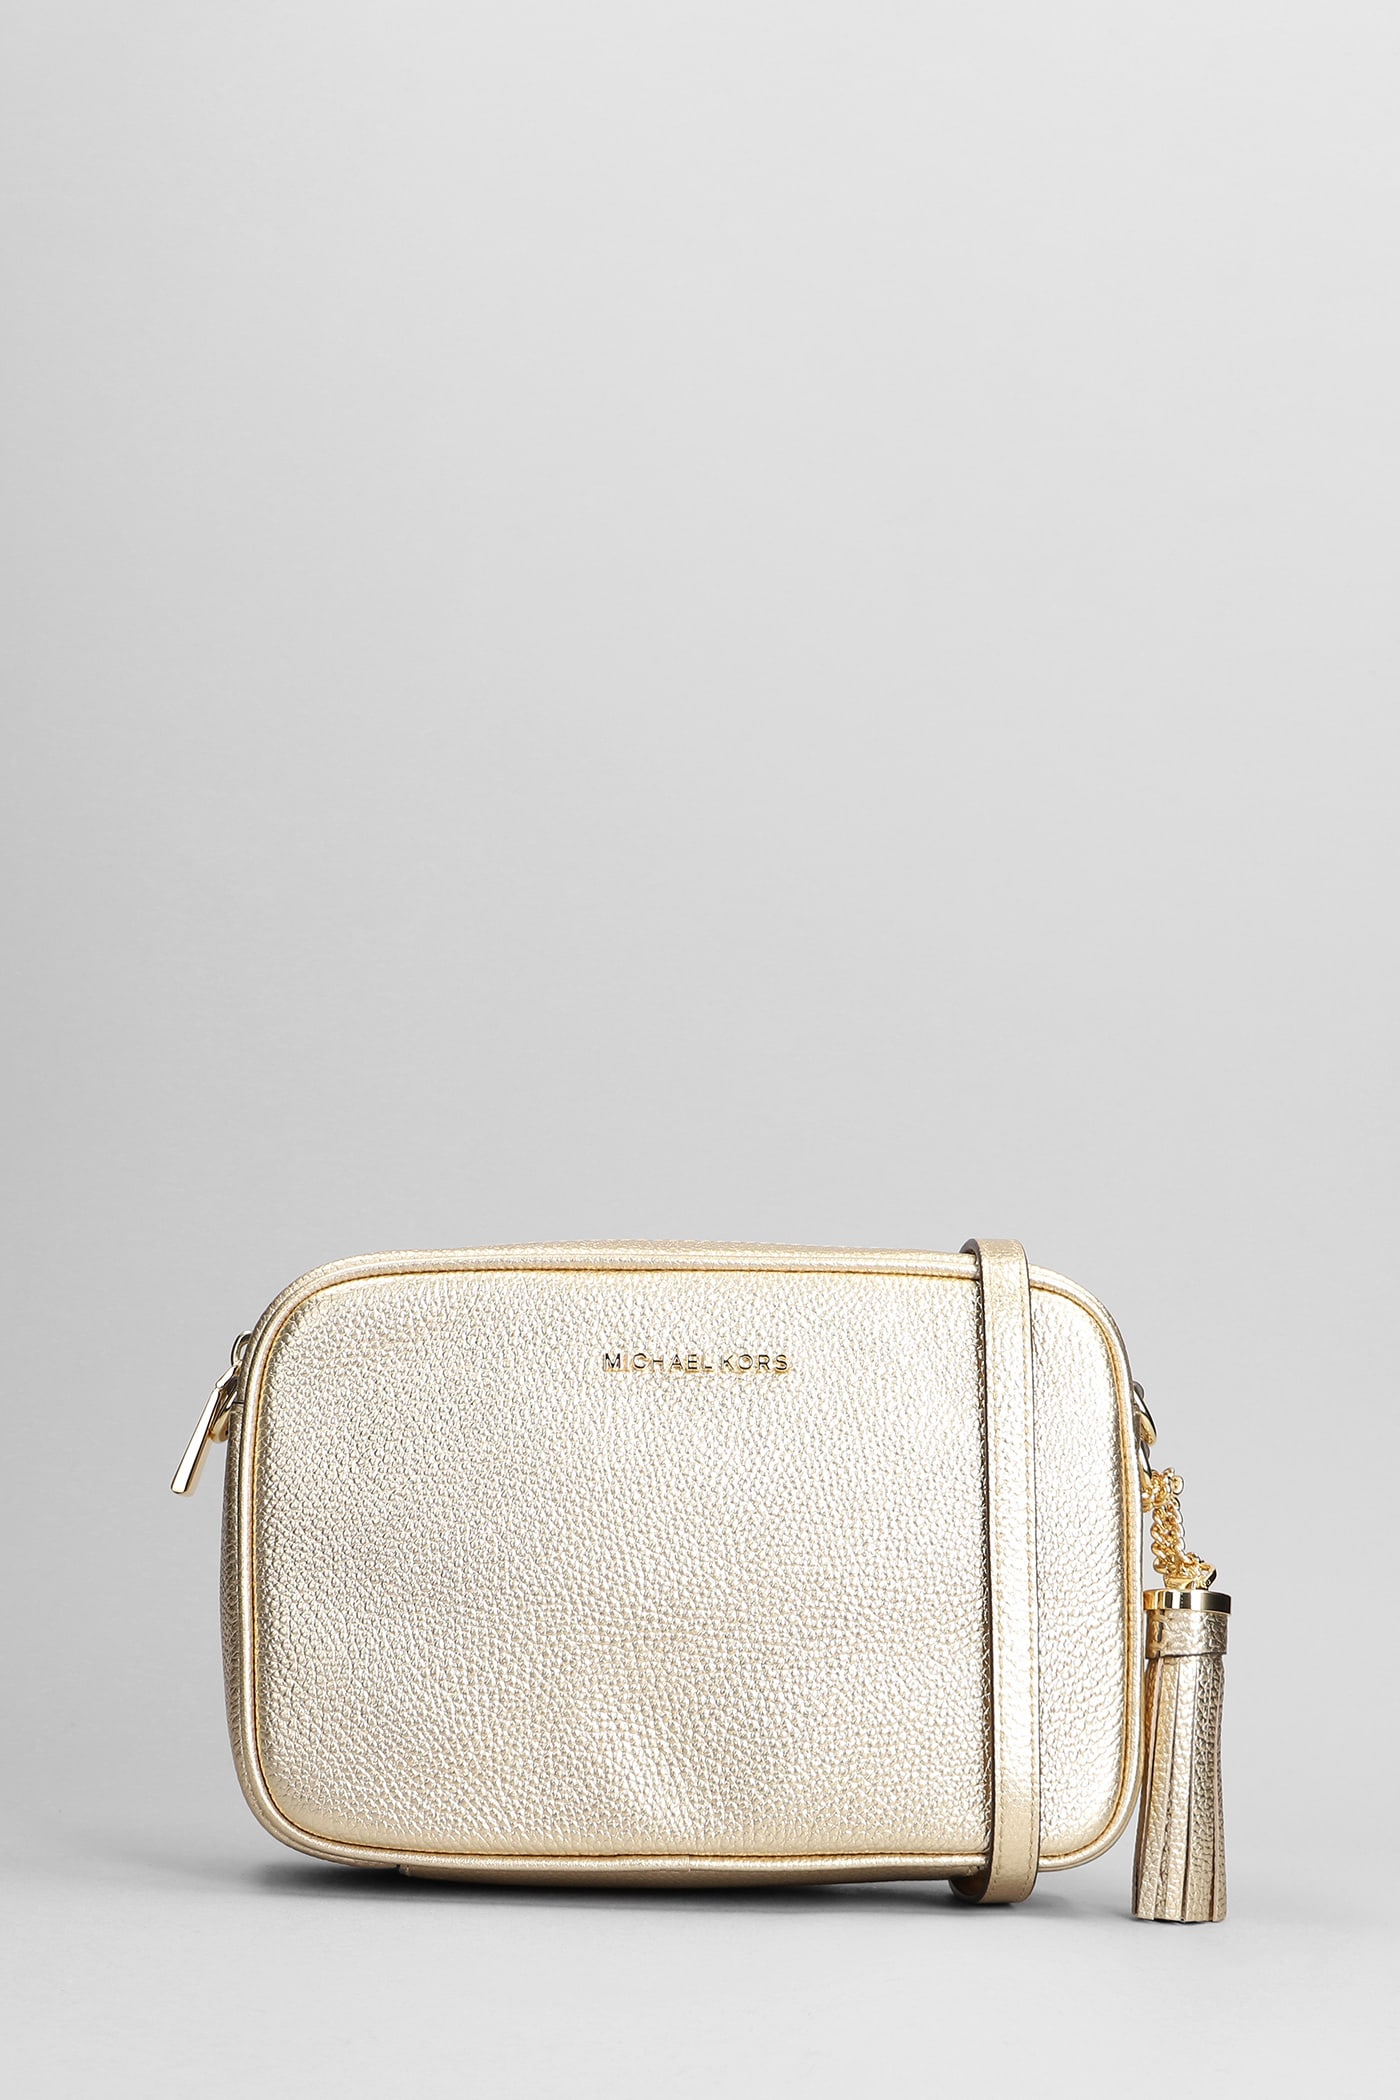 Michael Kors Ginny Shoulder Bag In Gold Leather